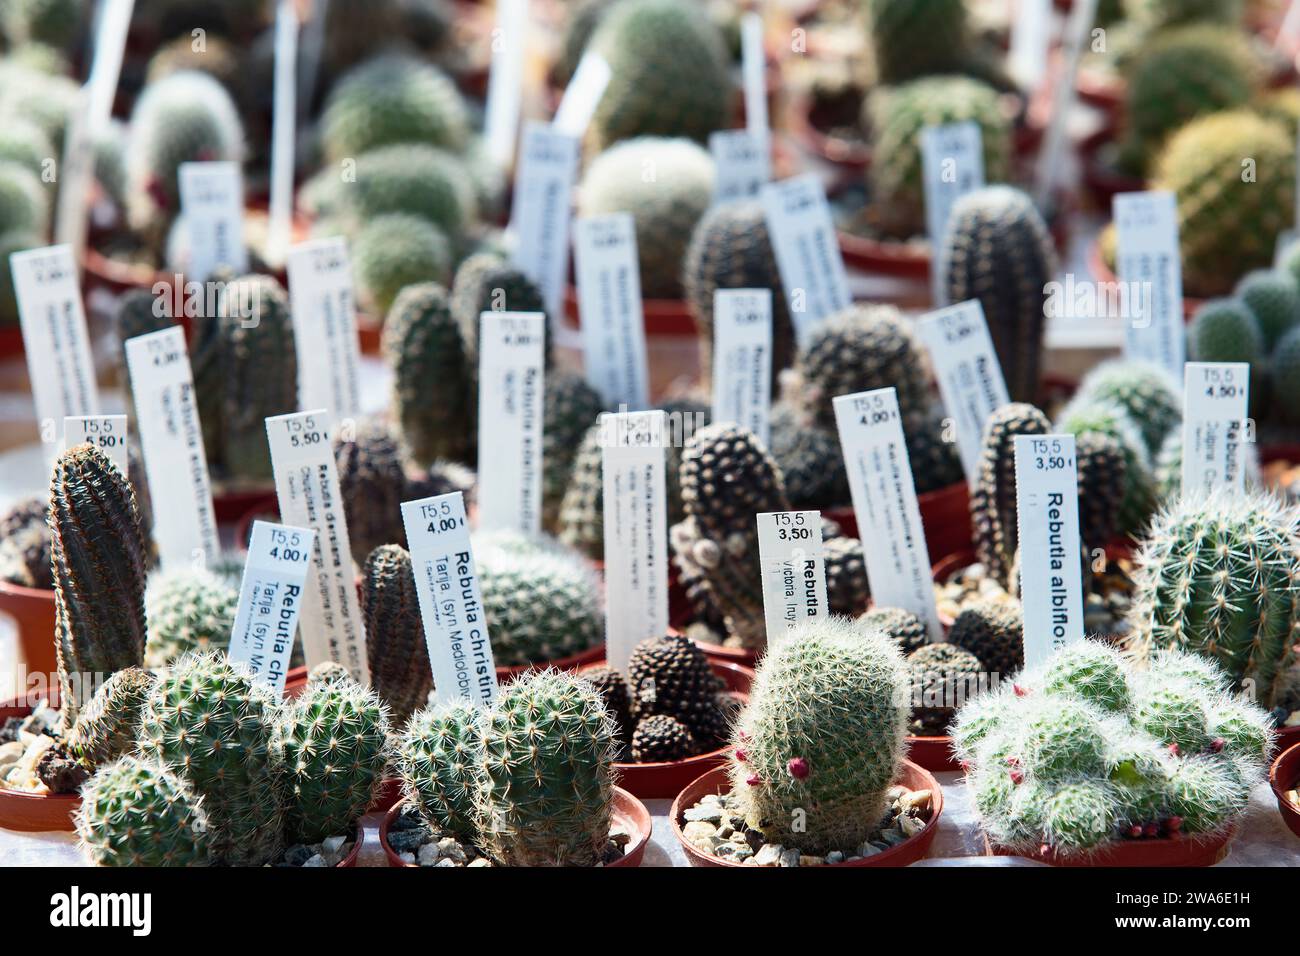 Collectible cactus for sale, Cactaceae. Ornamental succulent plant. Stock Photo